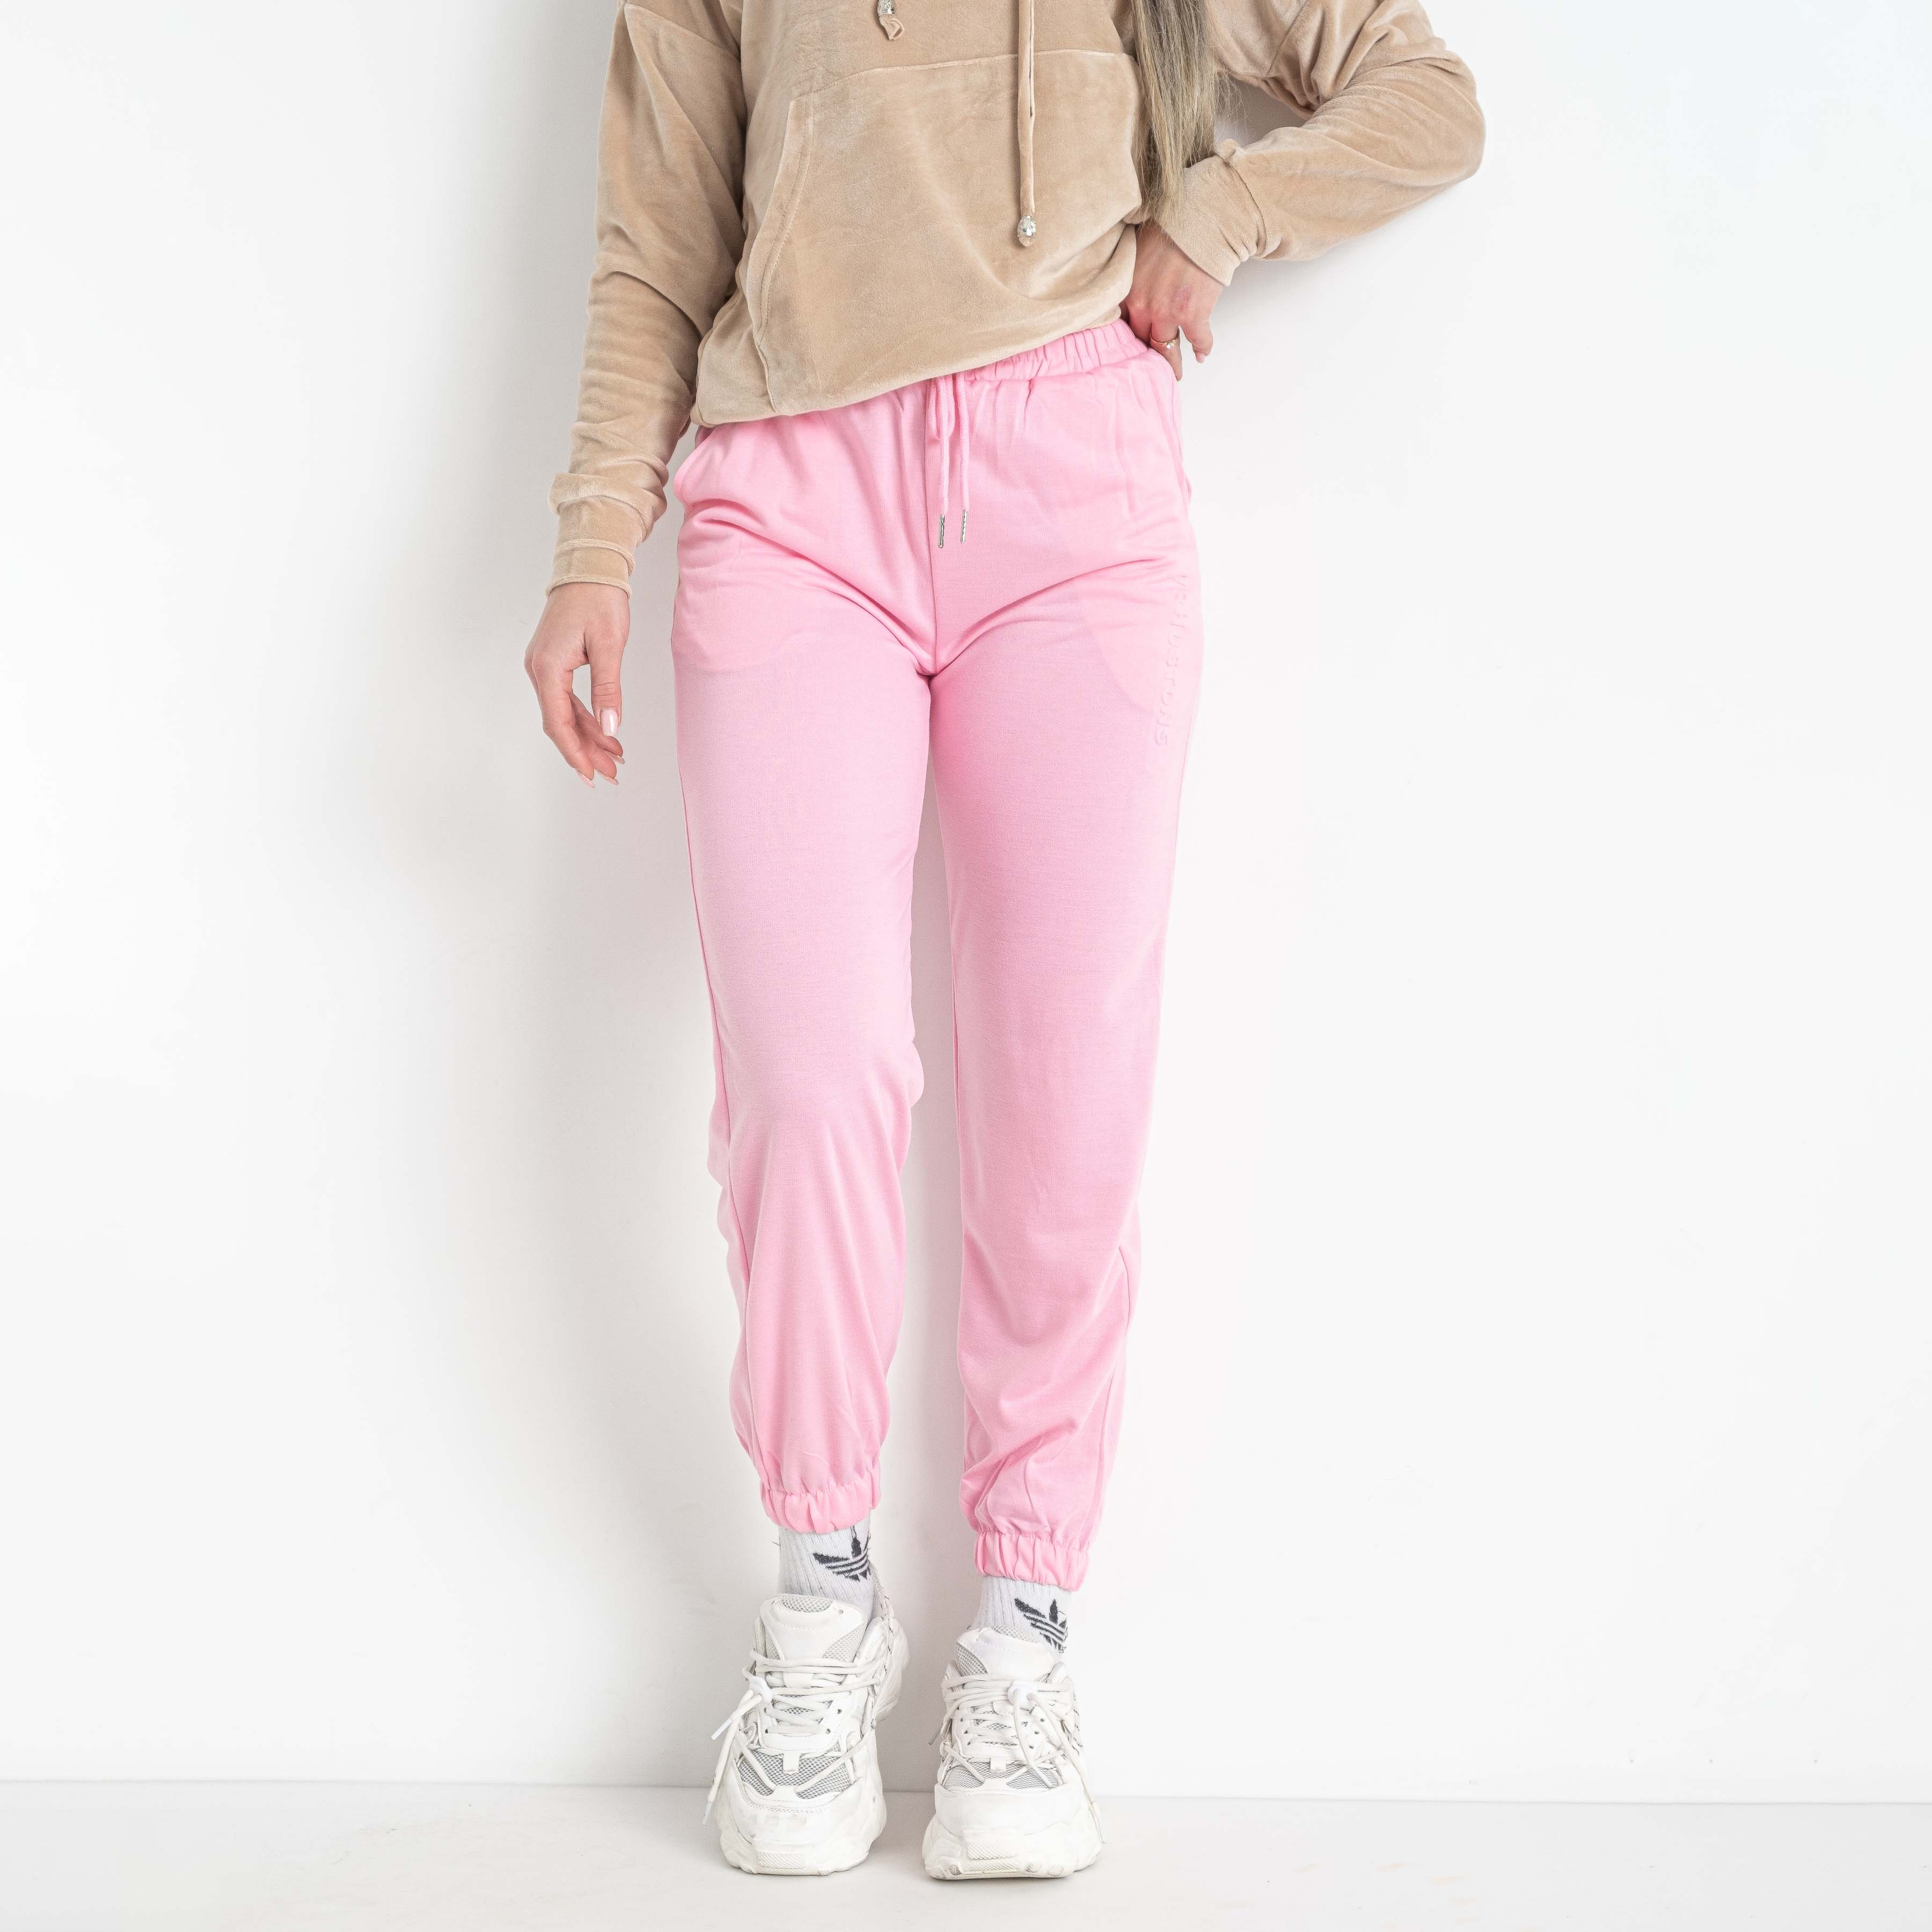 0014-8 розовые женские спортивные штаны (X&D, двунитка, 6 ед. размеры норма: S. M. L. XL. 2XL. 3XL)